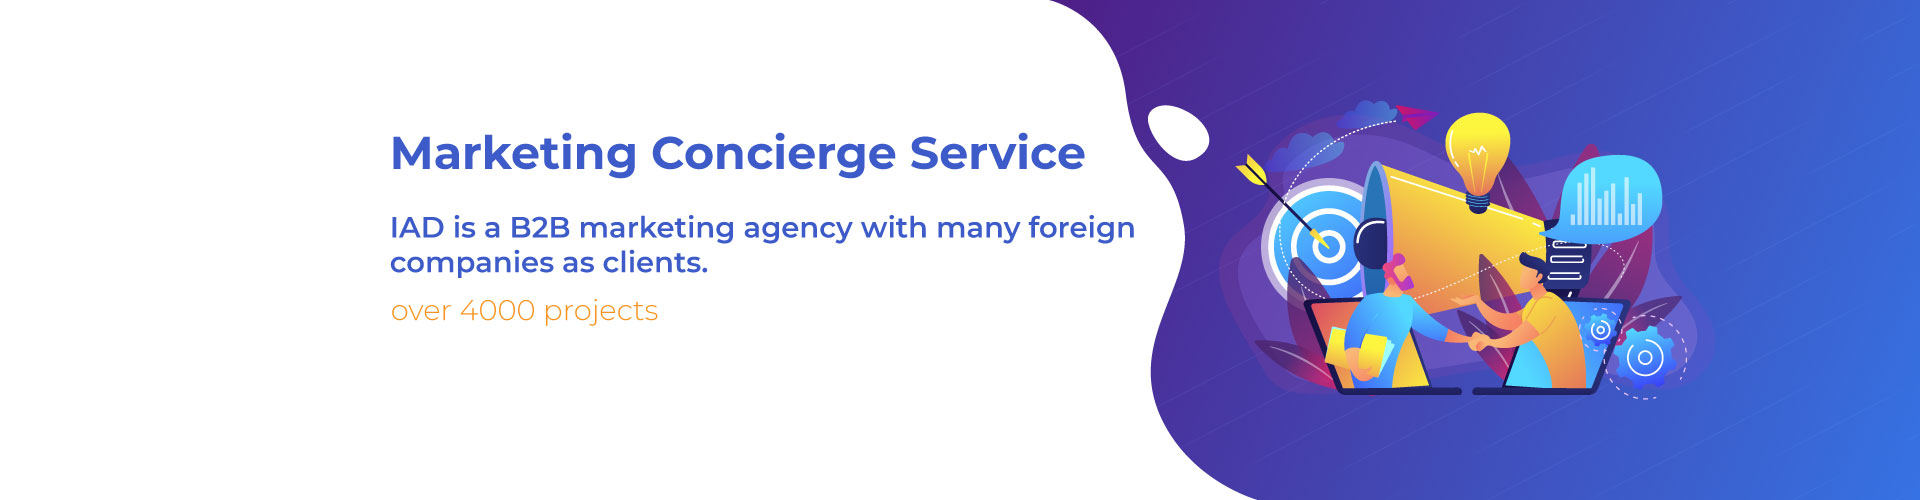 IAD Marketing Concierge Service